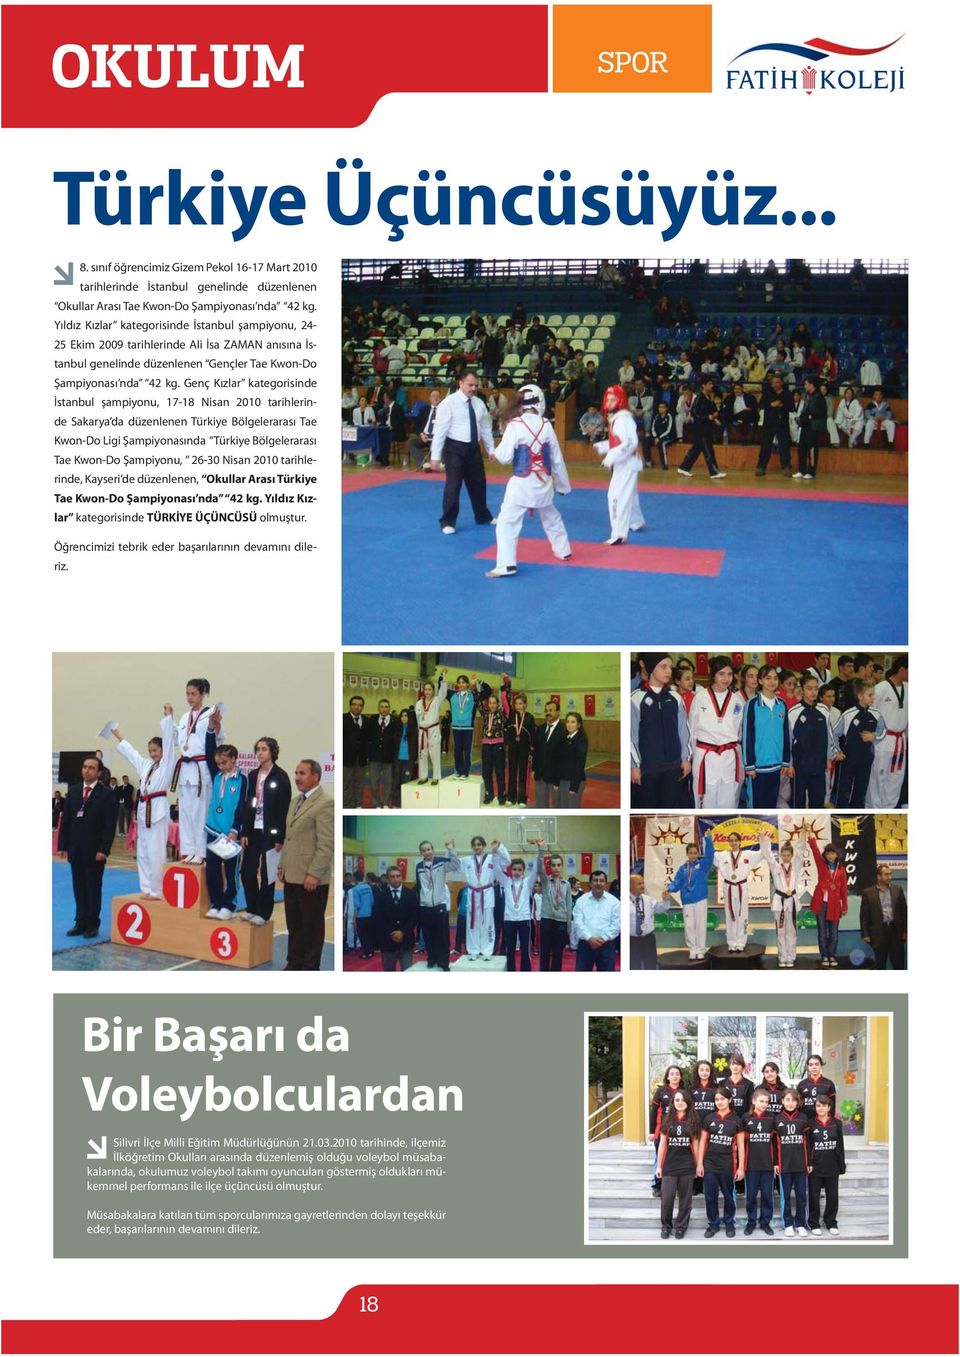 Genç Kızlar kategorisinde İstanbul şampiyonu, 17-18 Nisan 2010 tarihlerinde Sakarya da düzenlenen Türkiye Bölgelerarası Tae Kwon-Do Ligi Şampiyonasında Türkiye Bölgelerarası Tae Kwon-Do Şampiyonu,